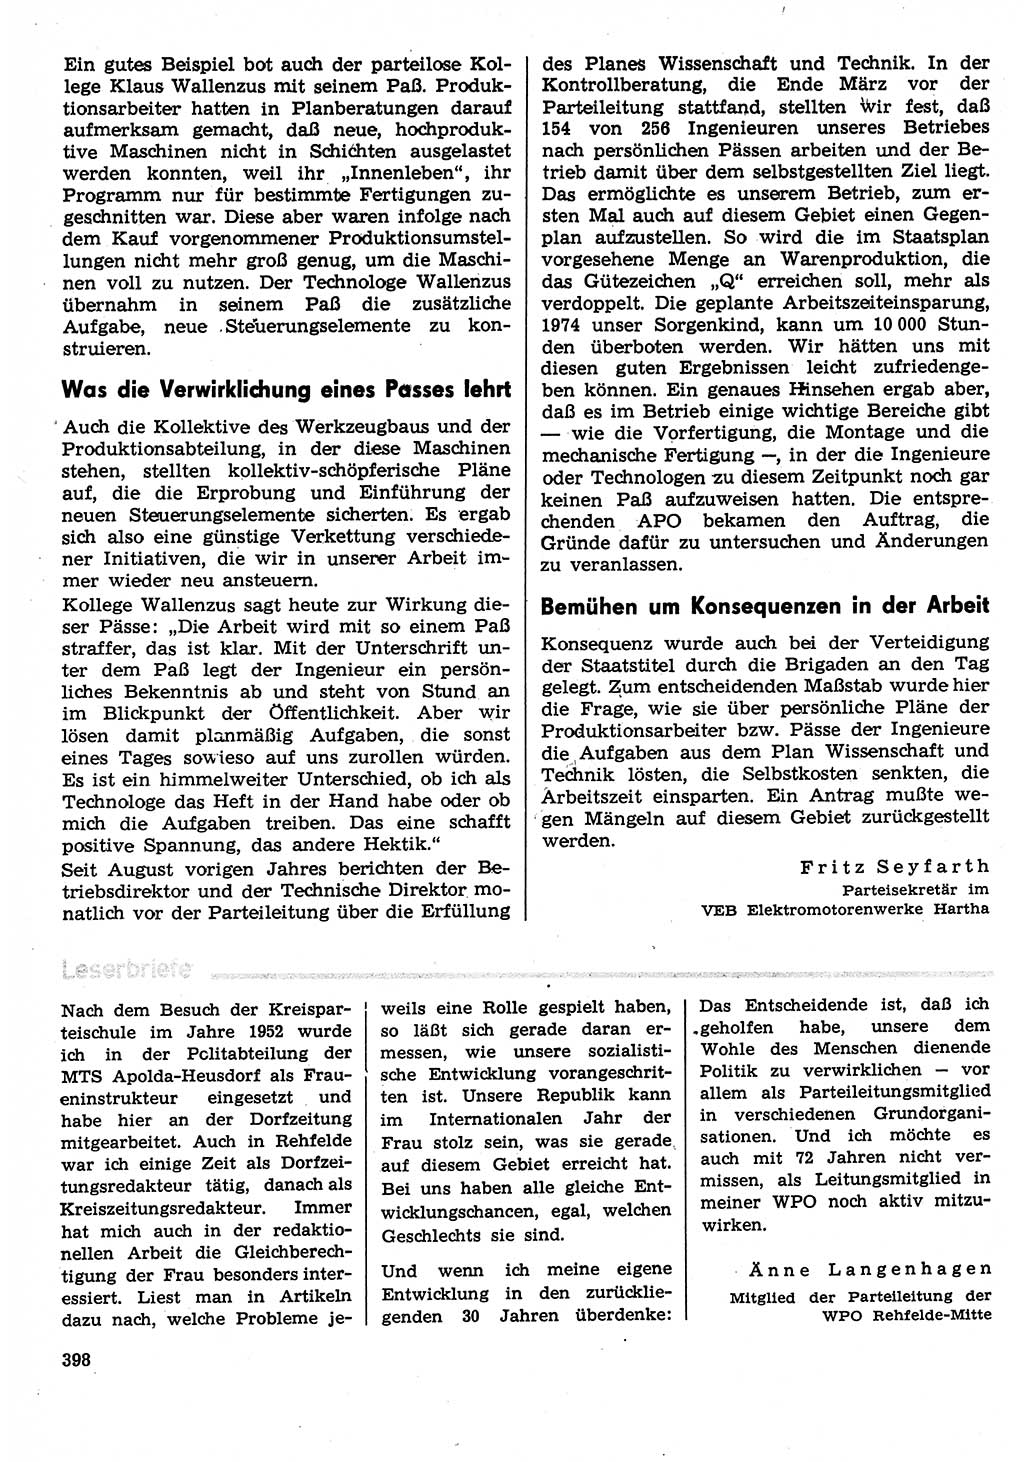 Neuer Weg (NW), Organ des Zentralkomitees (ZK) der SED (Sozialistische Einheitspartei Deutschlands) für Fragen des Parteilebens, 30. Jahrgang [Deutsche Demokratische Republik (DDR)] 1975, Seite 398 (NW ZK SED DDR 1975, S. 398)